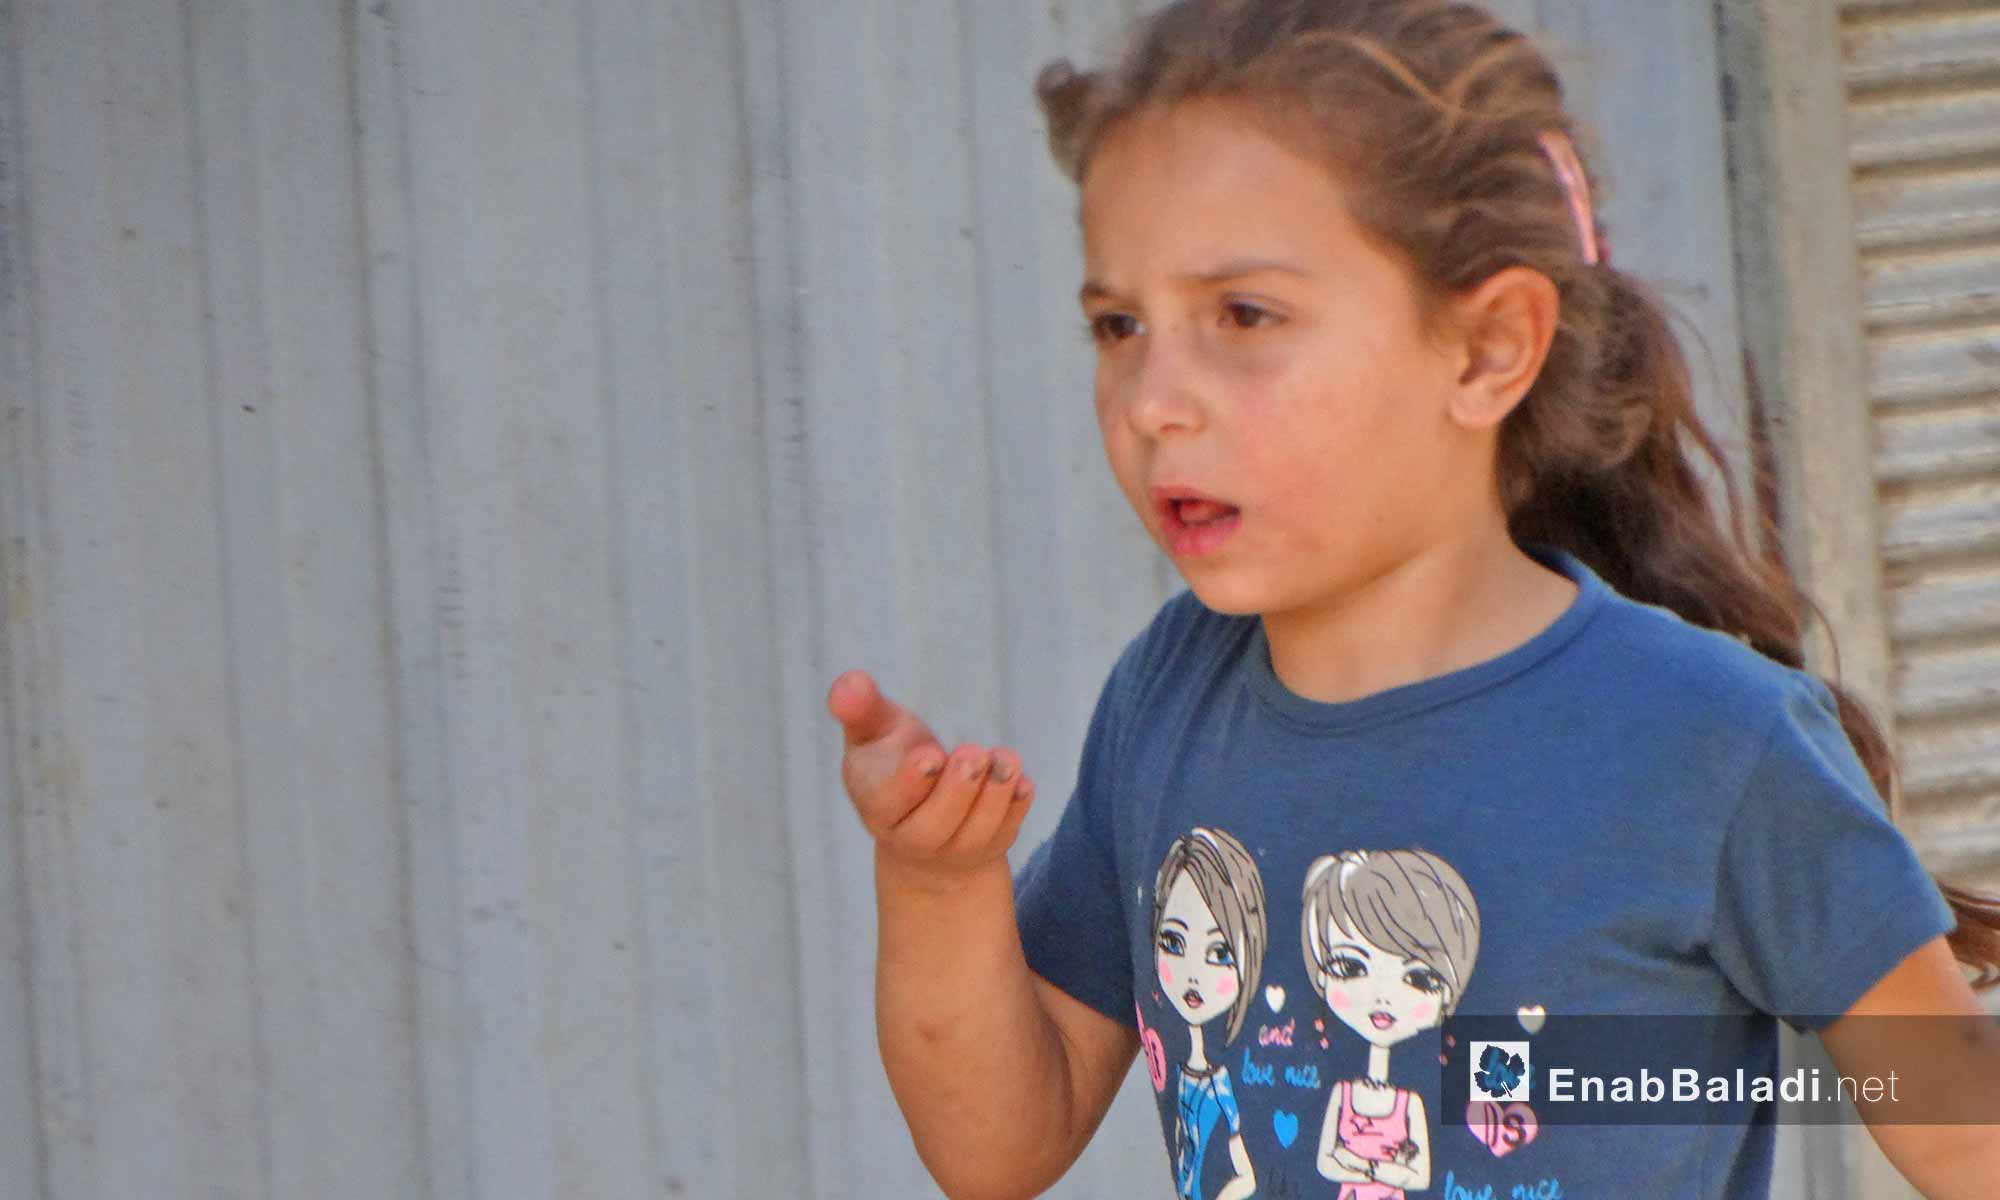 طفلة في حي الوعر بحمص - 11 تشرين الأول 2016 (عنب بلدي)